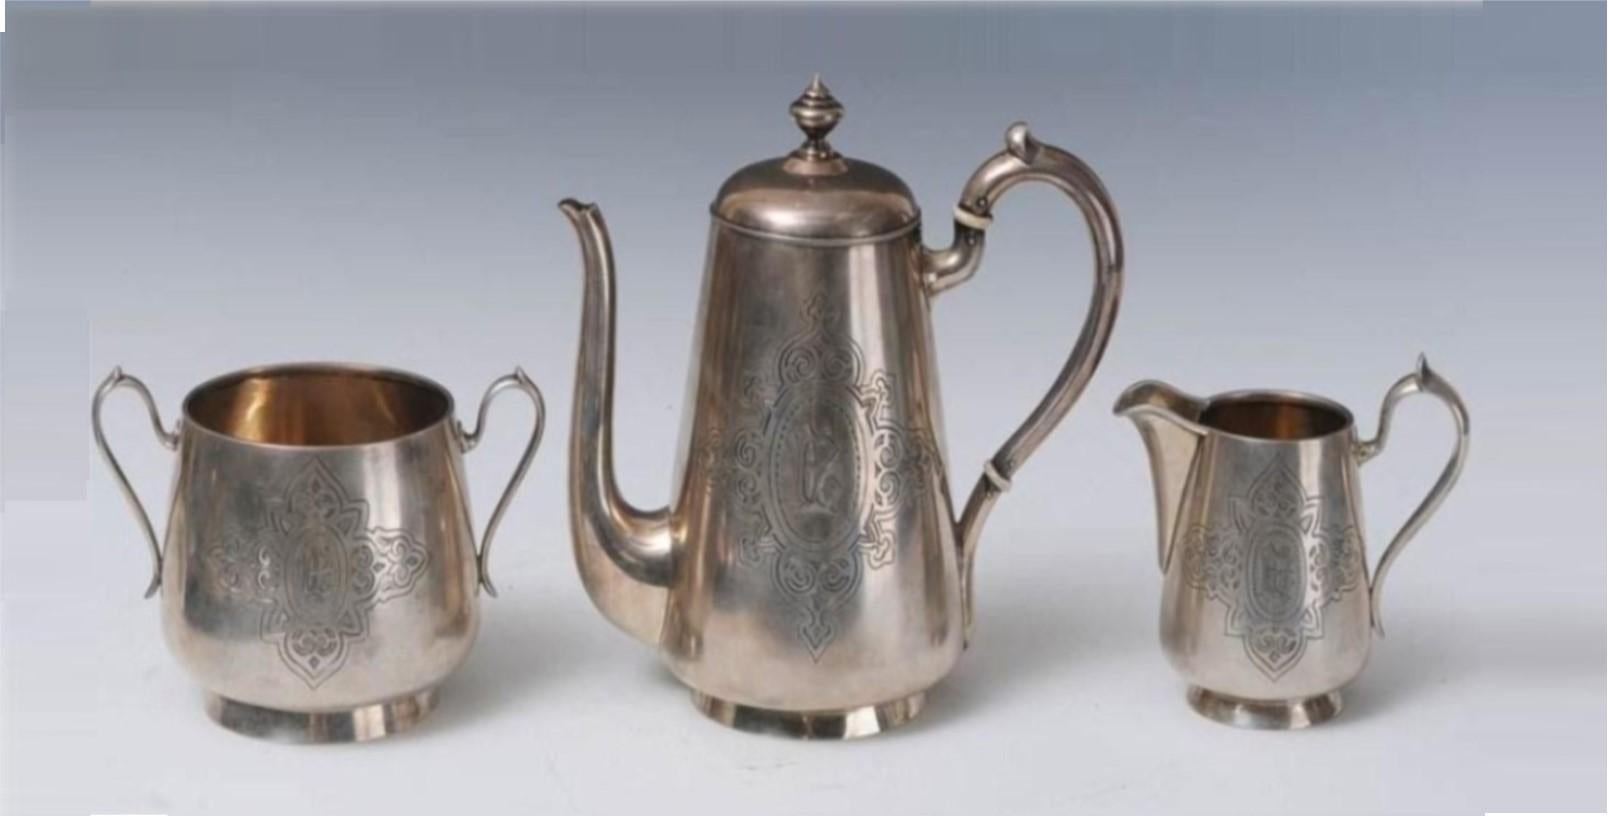 Der folgende Artikel, den wir anbieten, ist dieses RARE 19th Century Russian Sterling Silver Tea Set. Jedes Stück ist gestempelt und signiert 